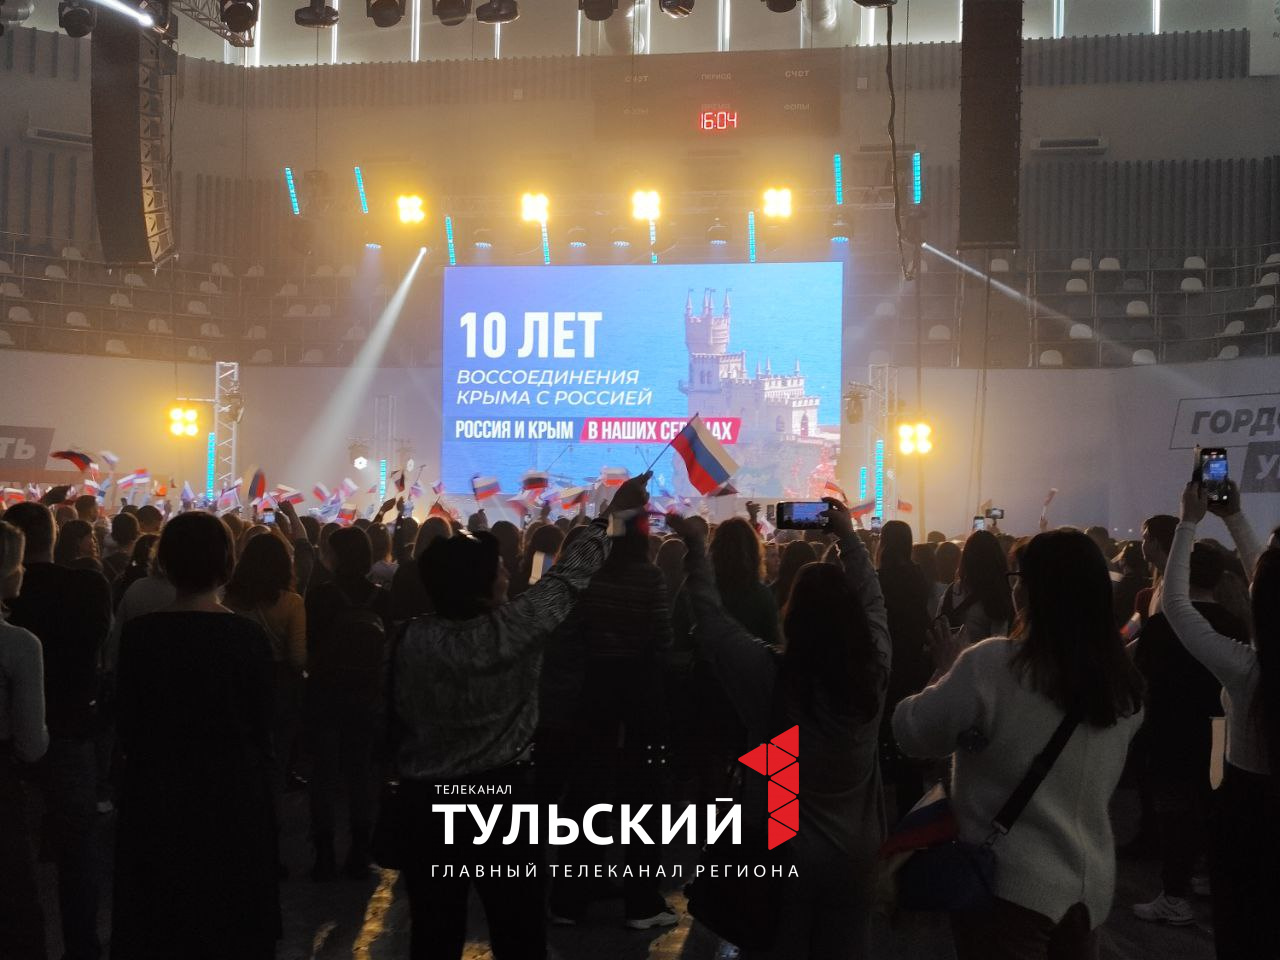 В Туле начался концерт Дениса Майданова и Виктории Дайнеко